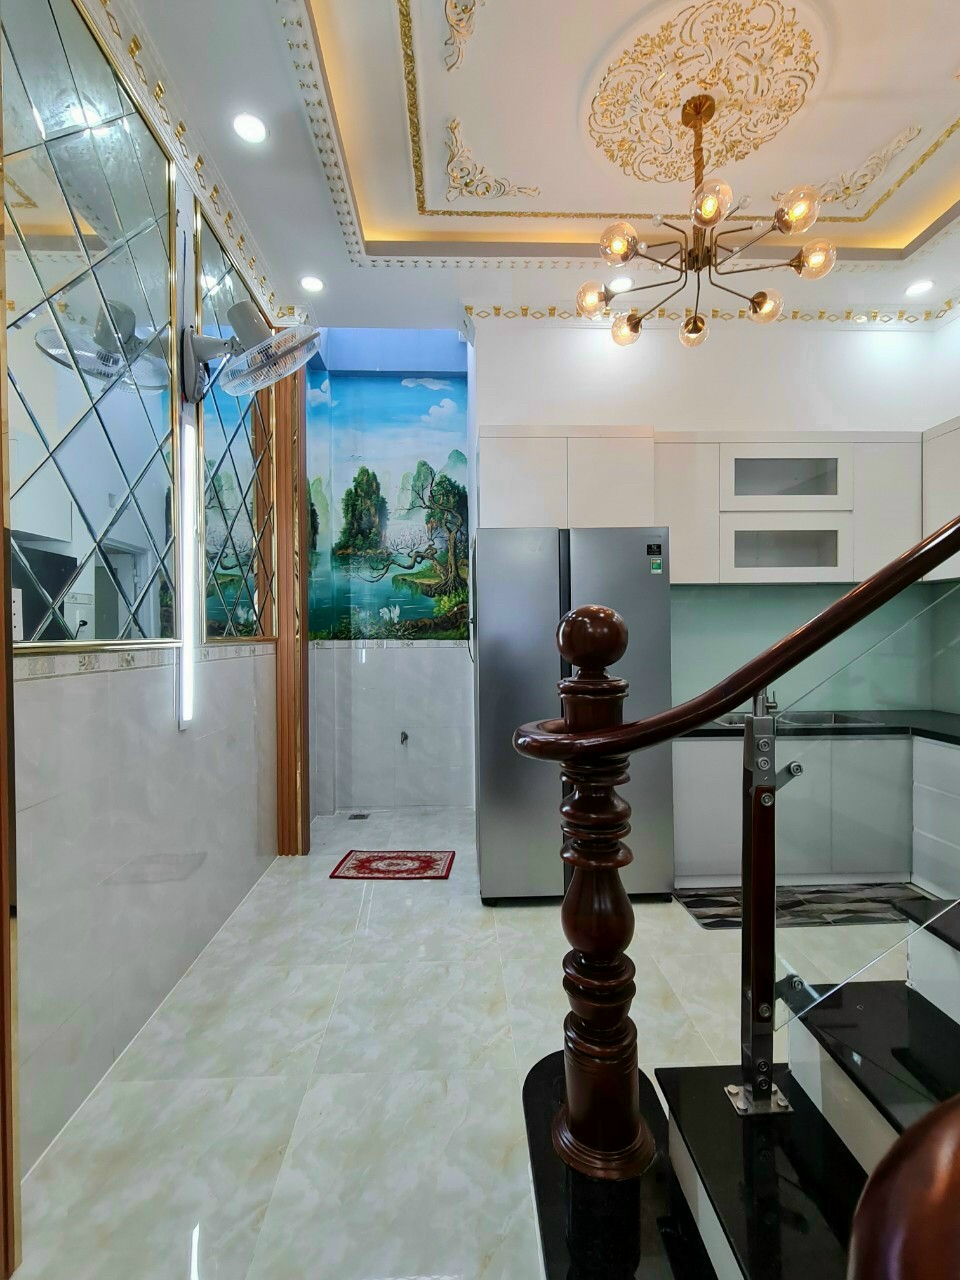 Cần bán nhà mới đẹp full nội thất hẻm 6m Huỳnh Tấn Phát, NB. Giá 5,2 tỷ